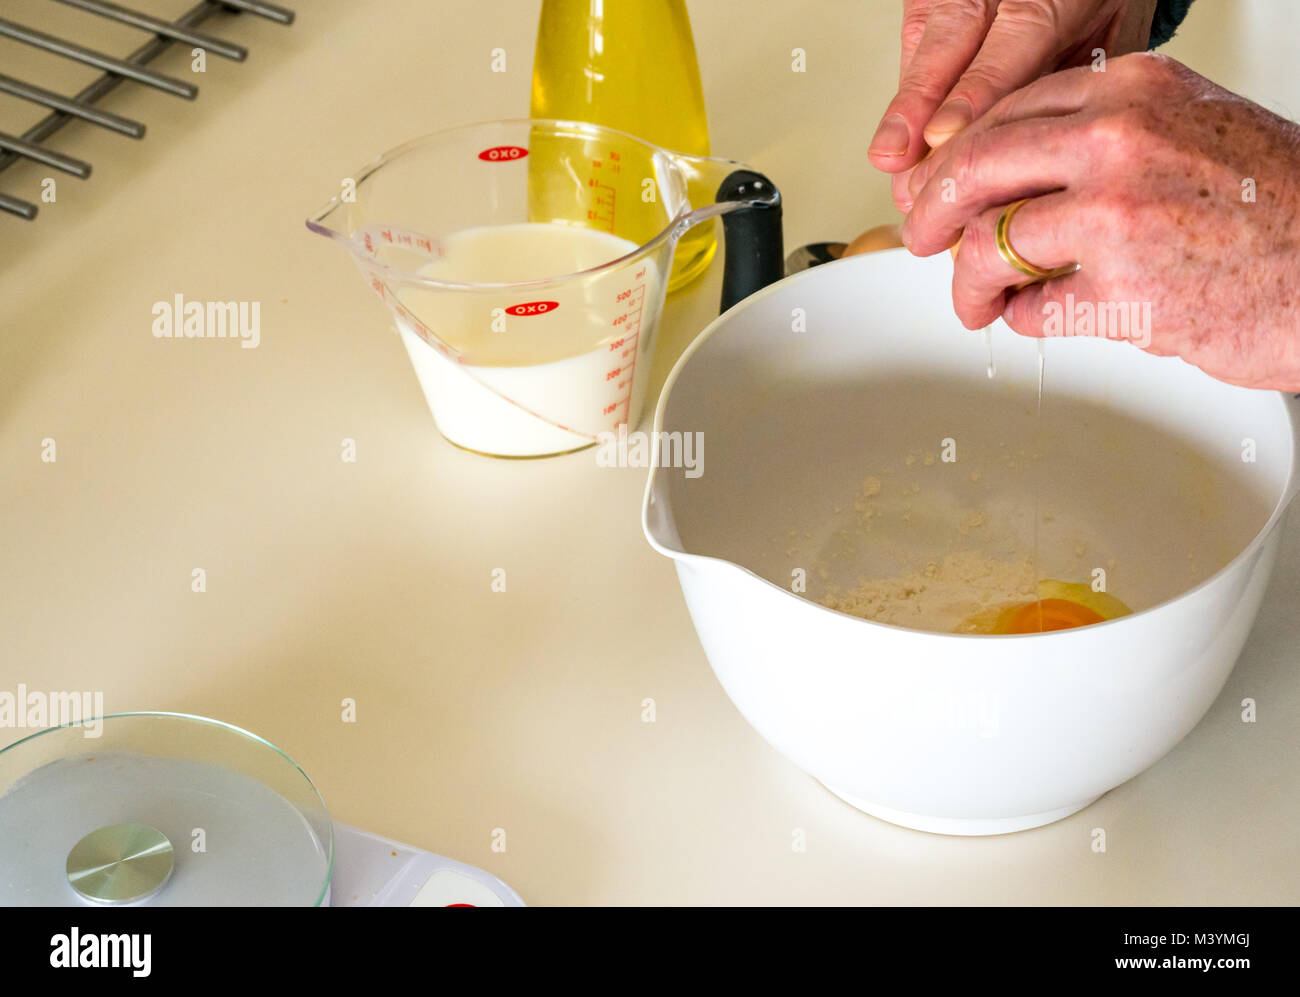 L'uomo battendo la miscela con una frusta per fare pastella di frittella dolce per il Martedì Grasso con farina, latte, uova e olio in una cucina domestica Foto Stock